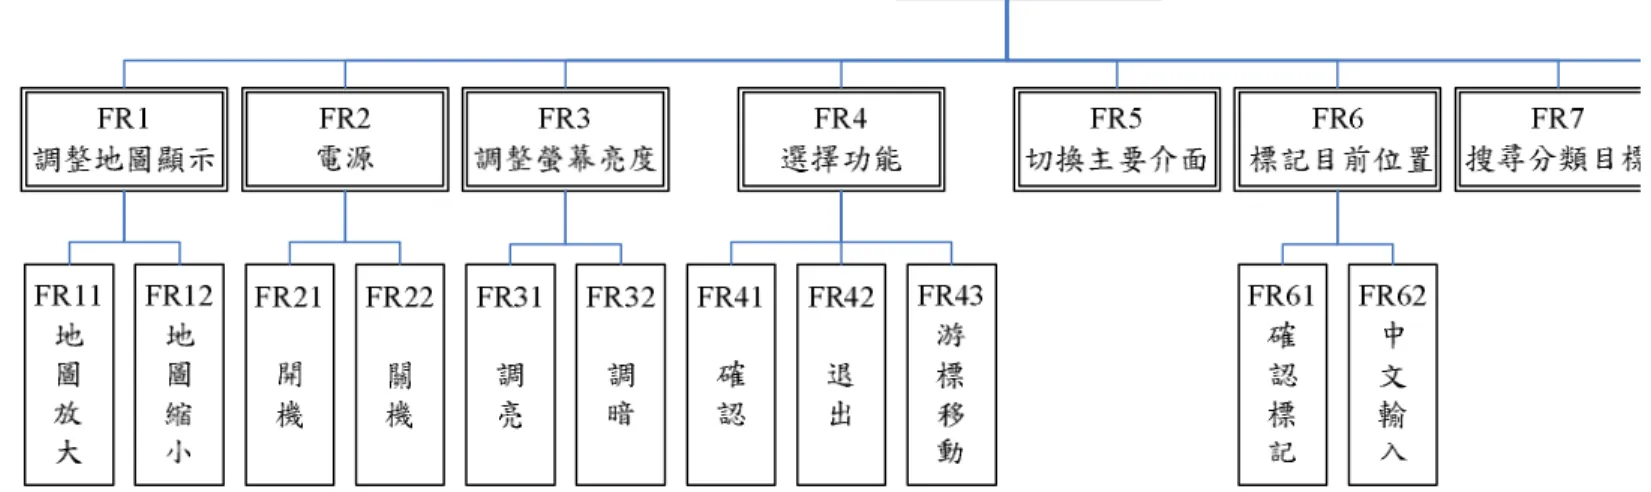 圖 4.2    功能需求之層級架構圖 